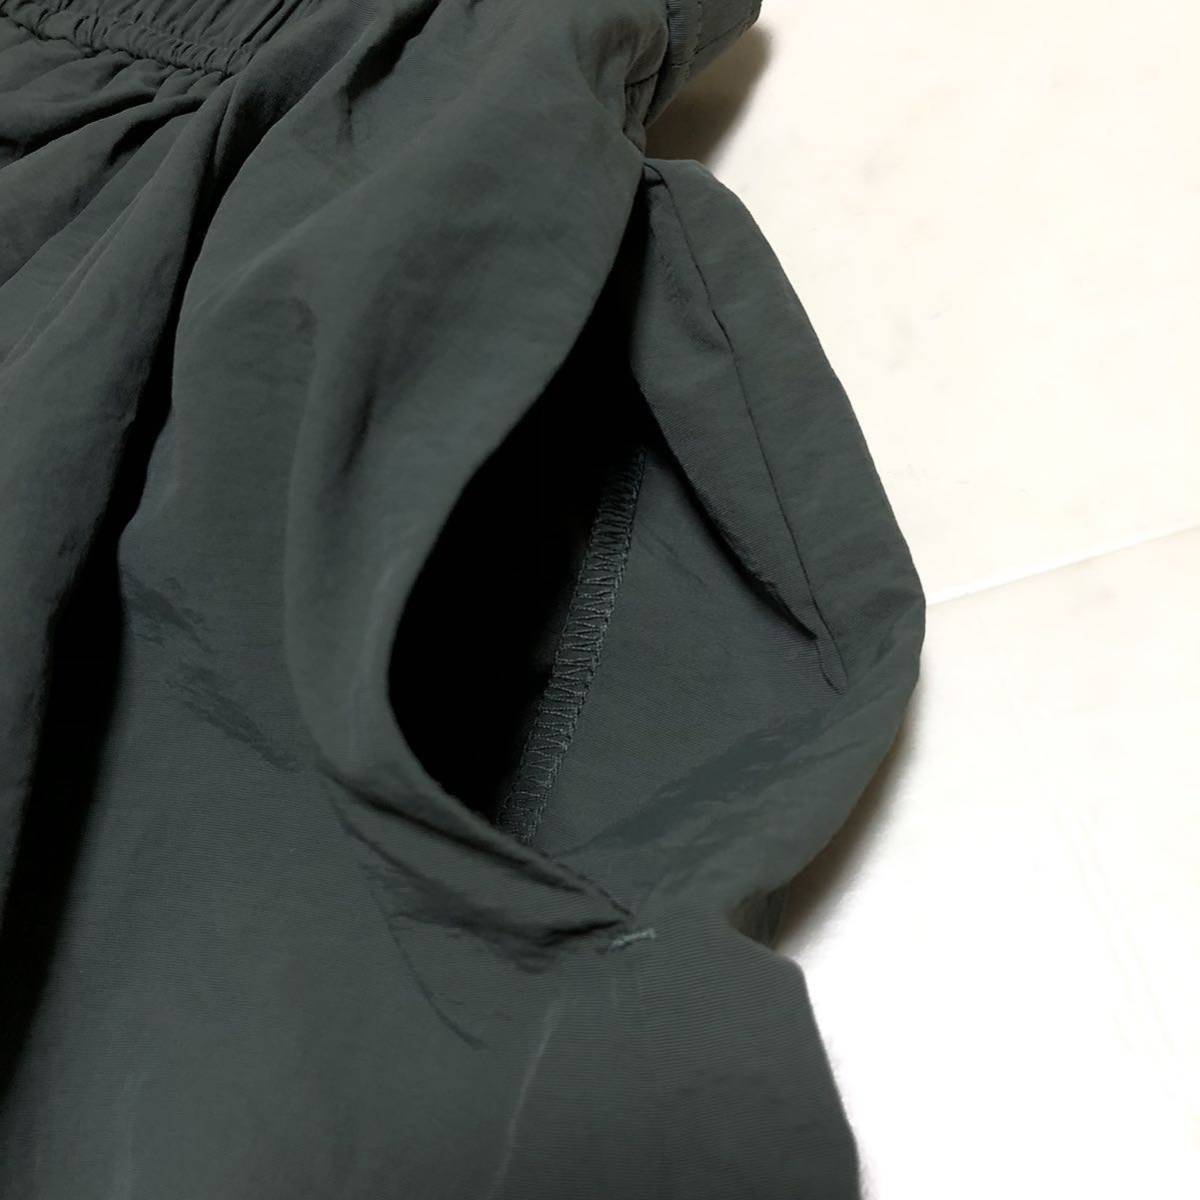 【送料360円】chocol raffine robe ショコラフィネローブ ナイロンギャザースカート 女性用 レディース フリーサイズ 古着 CD60_画像3